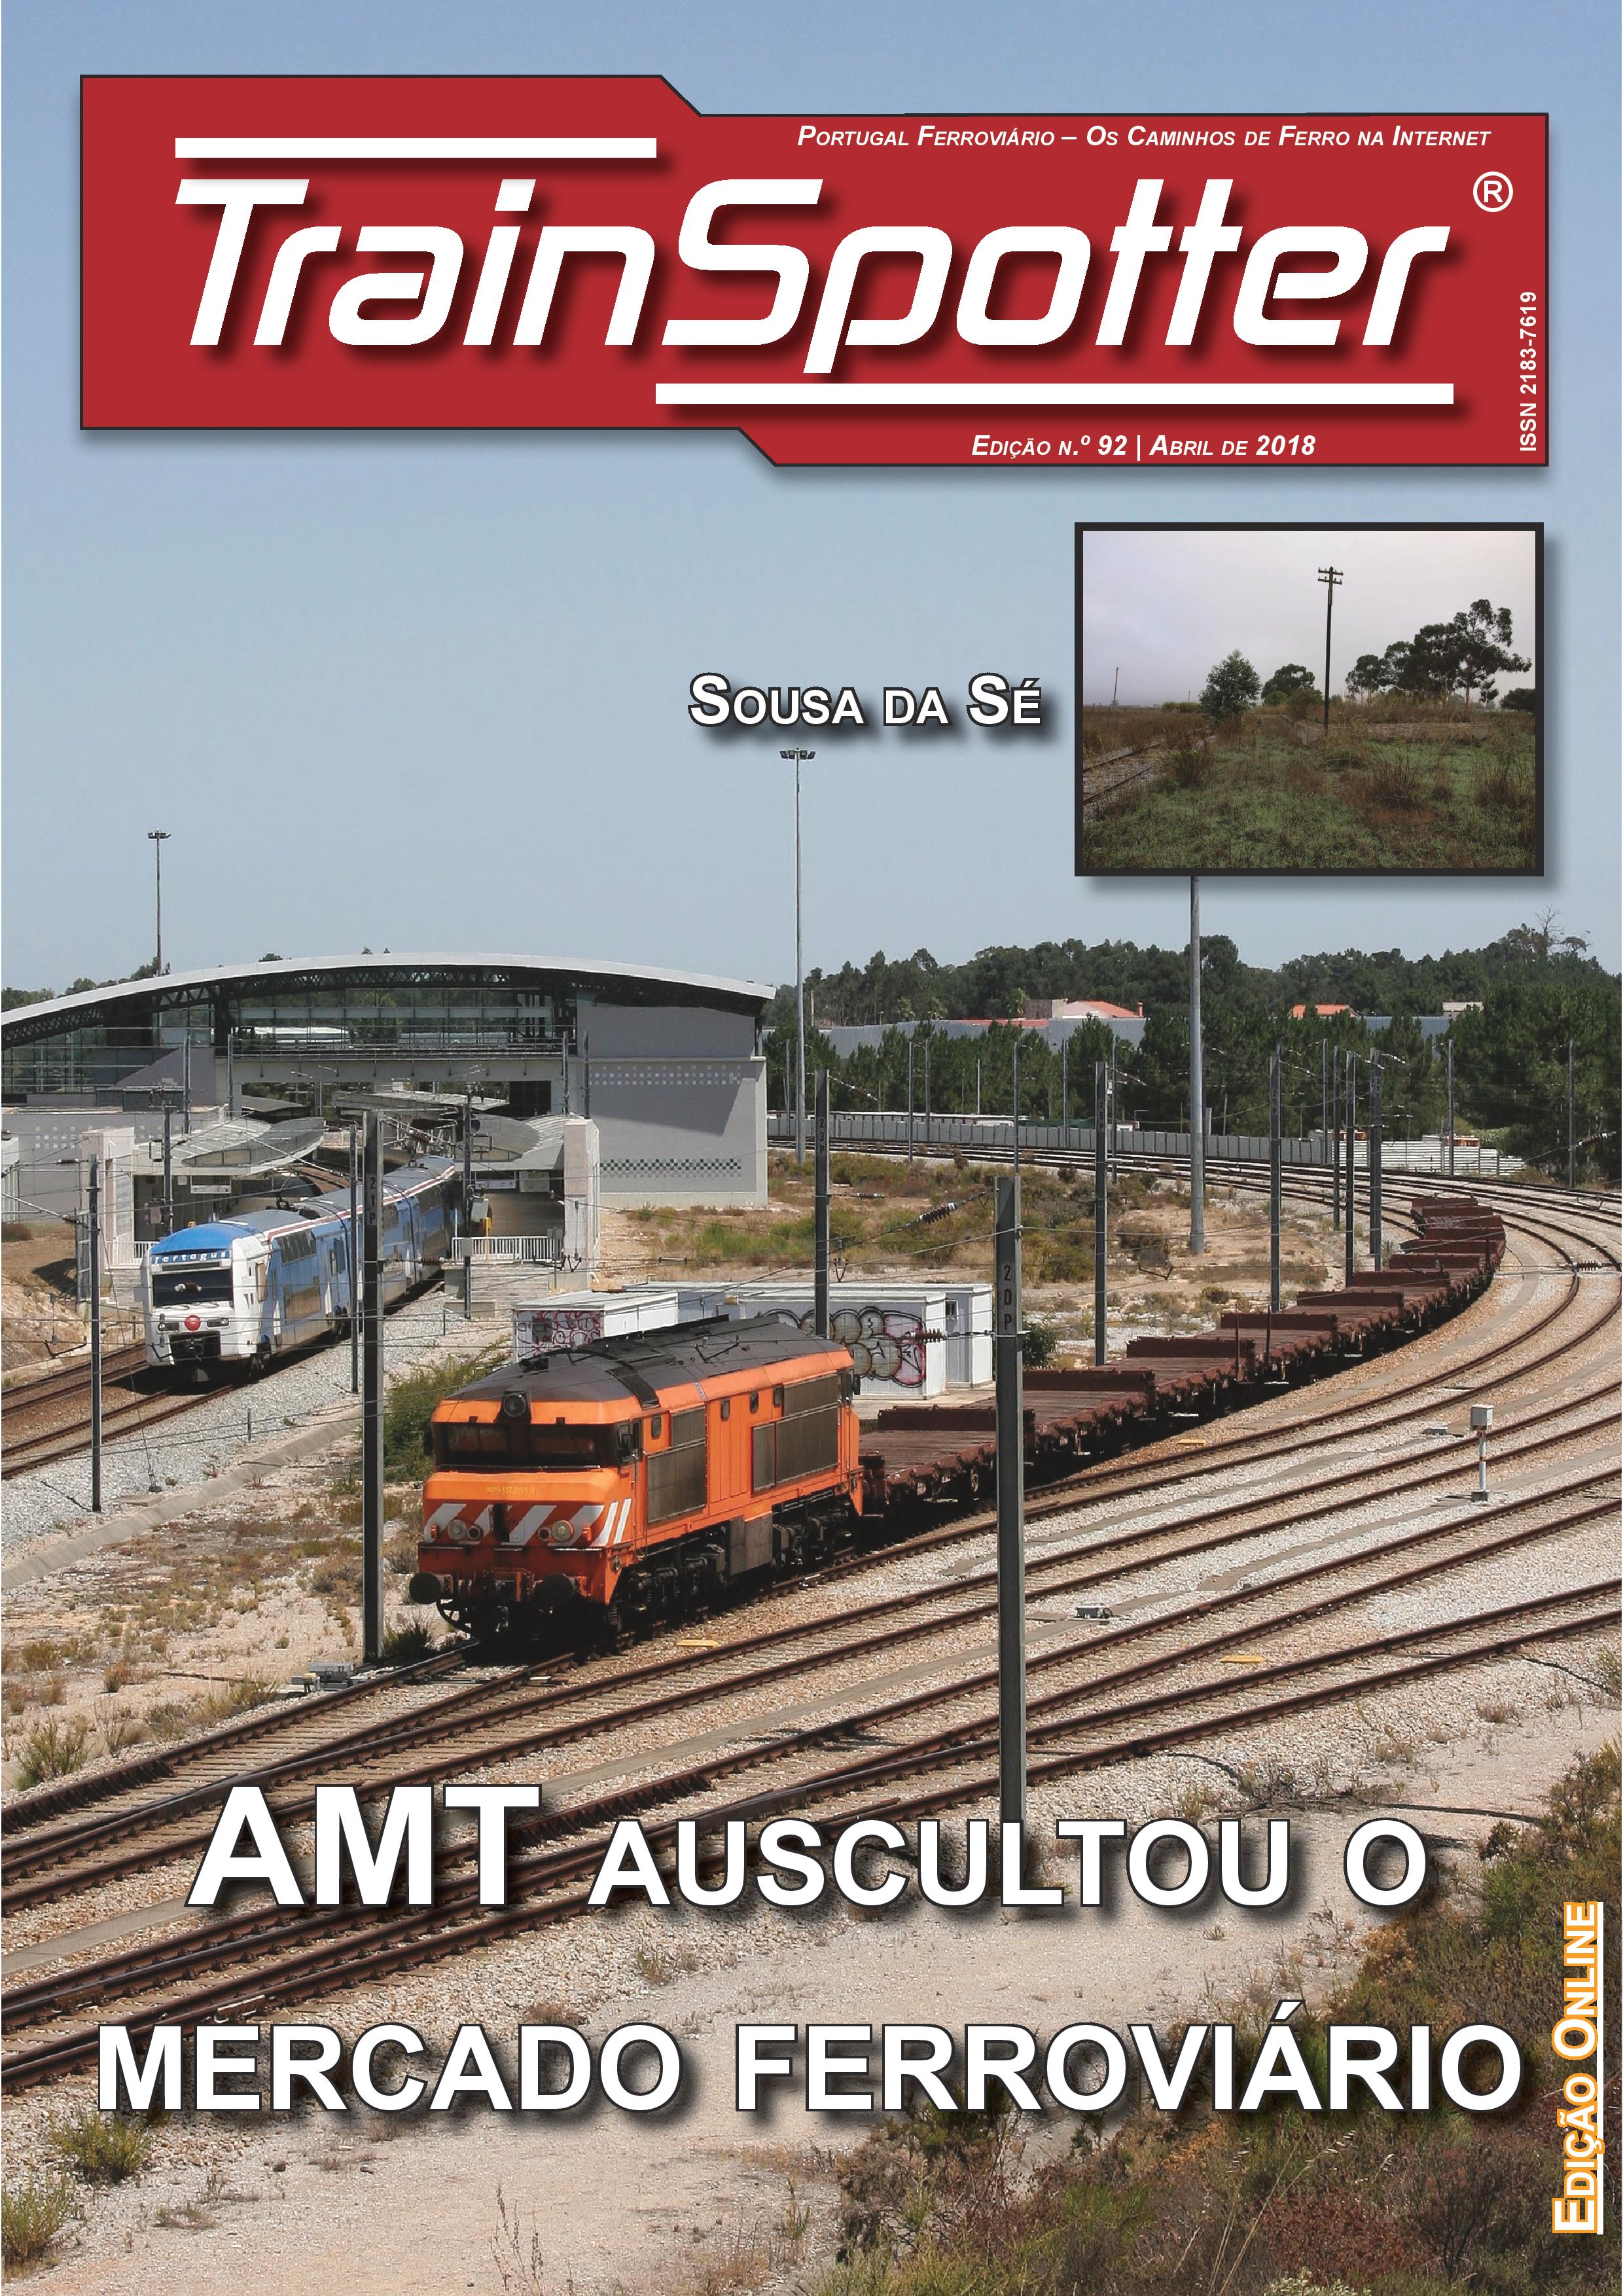 Trainspotter nº 092 – Abril de 2018